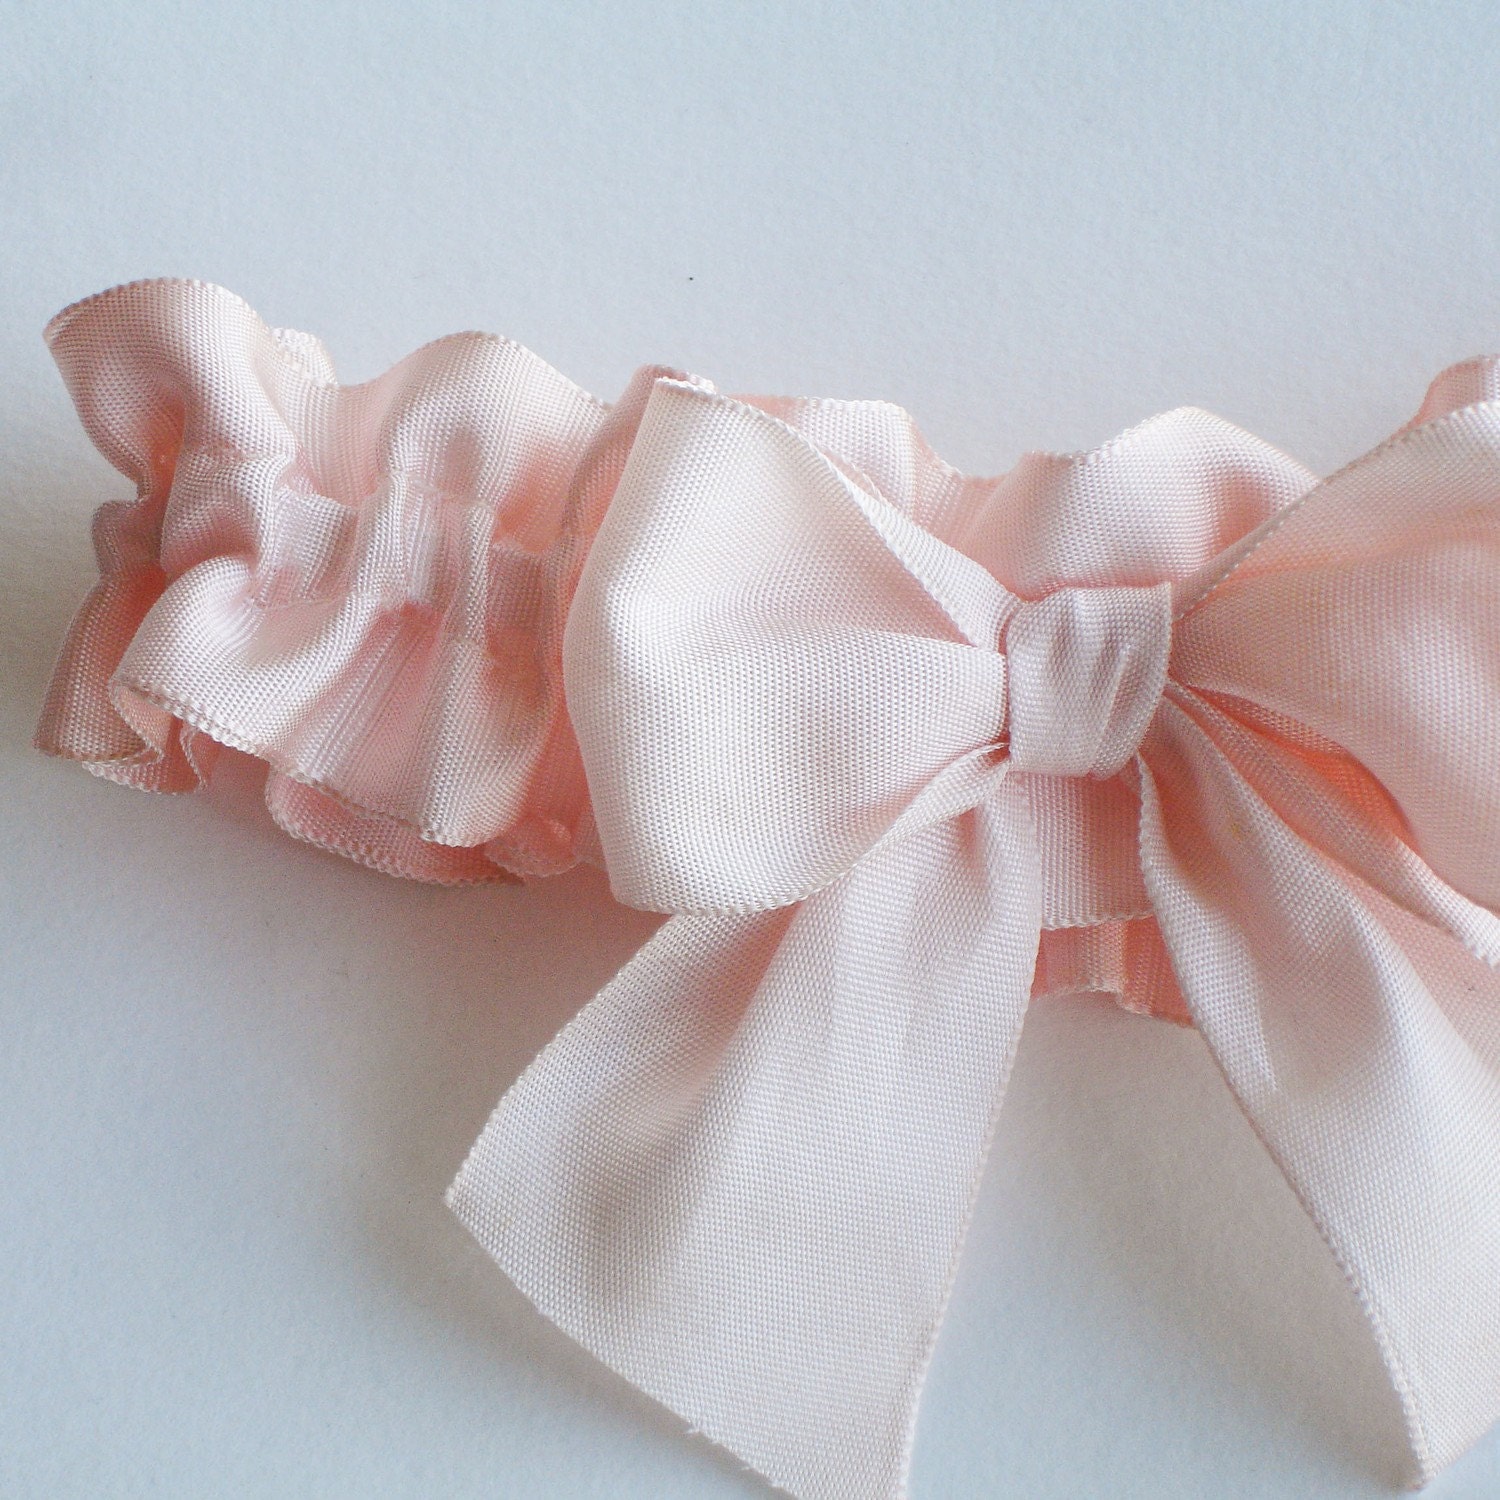 Big Bow Garter in ballet pink vintage ribbon